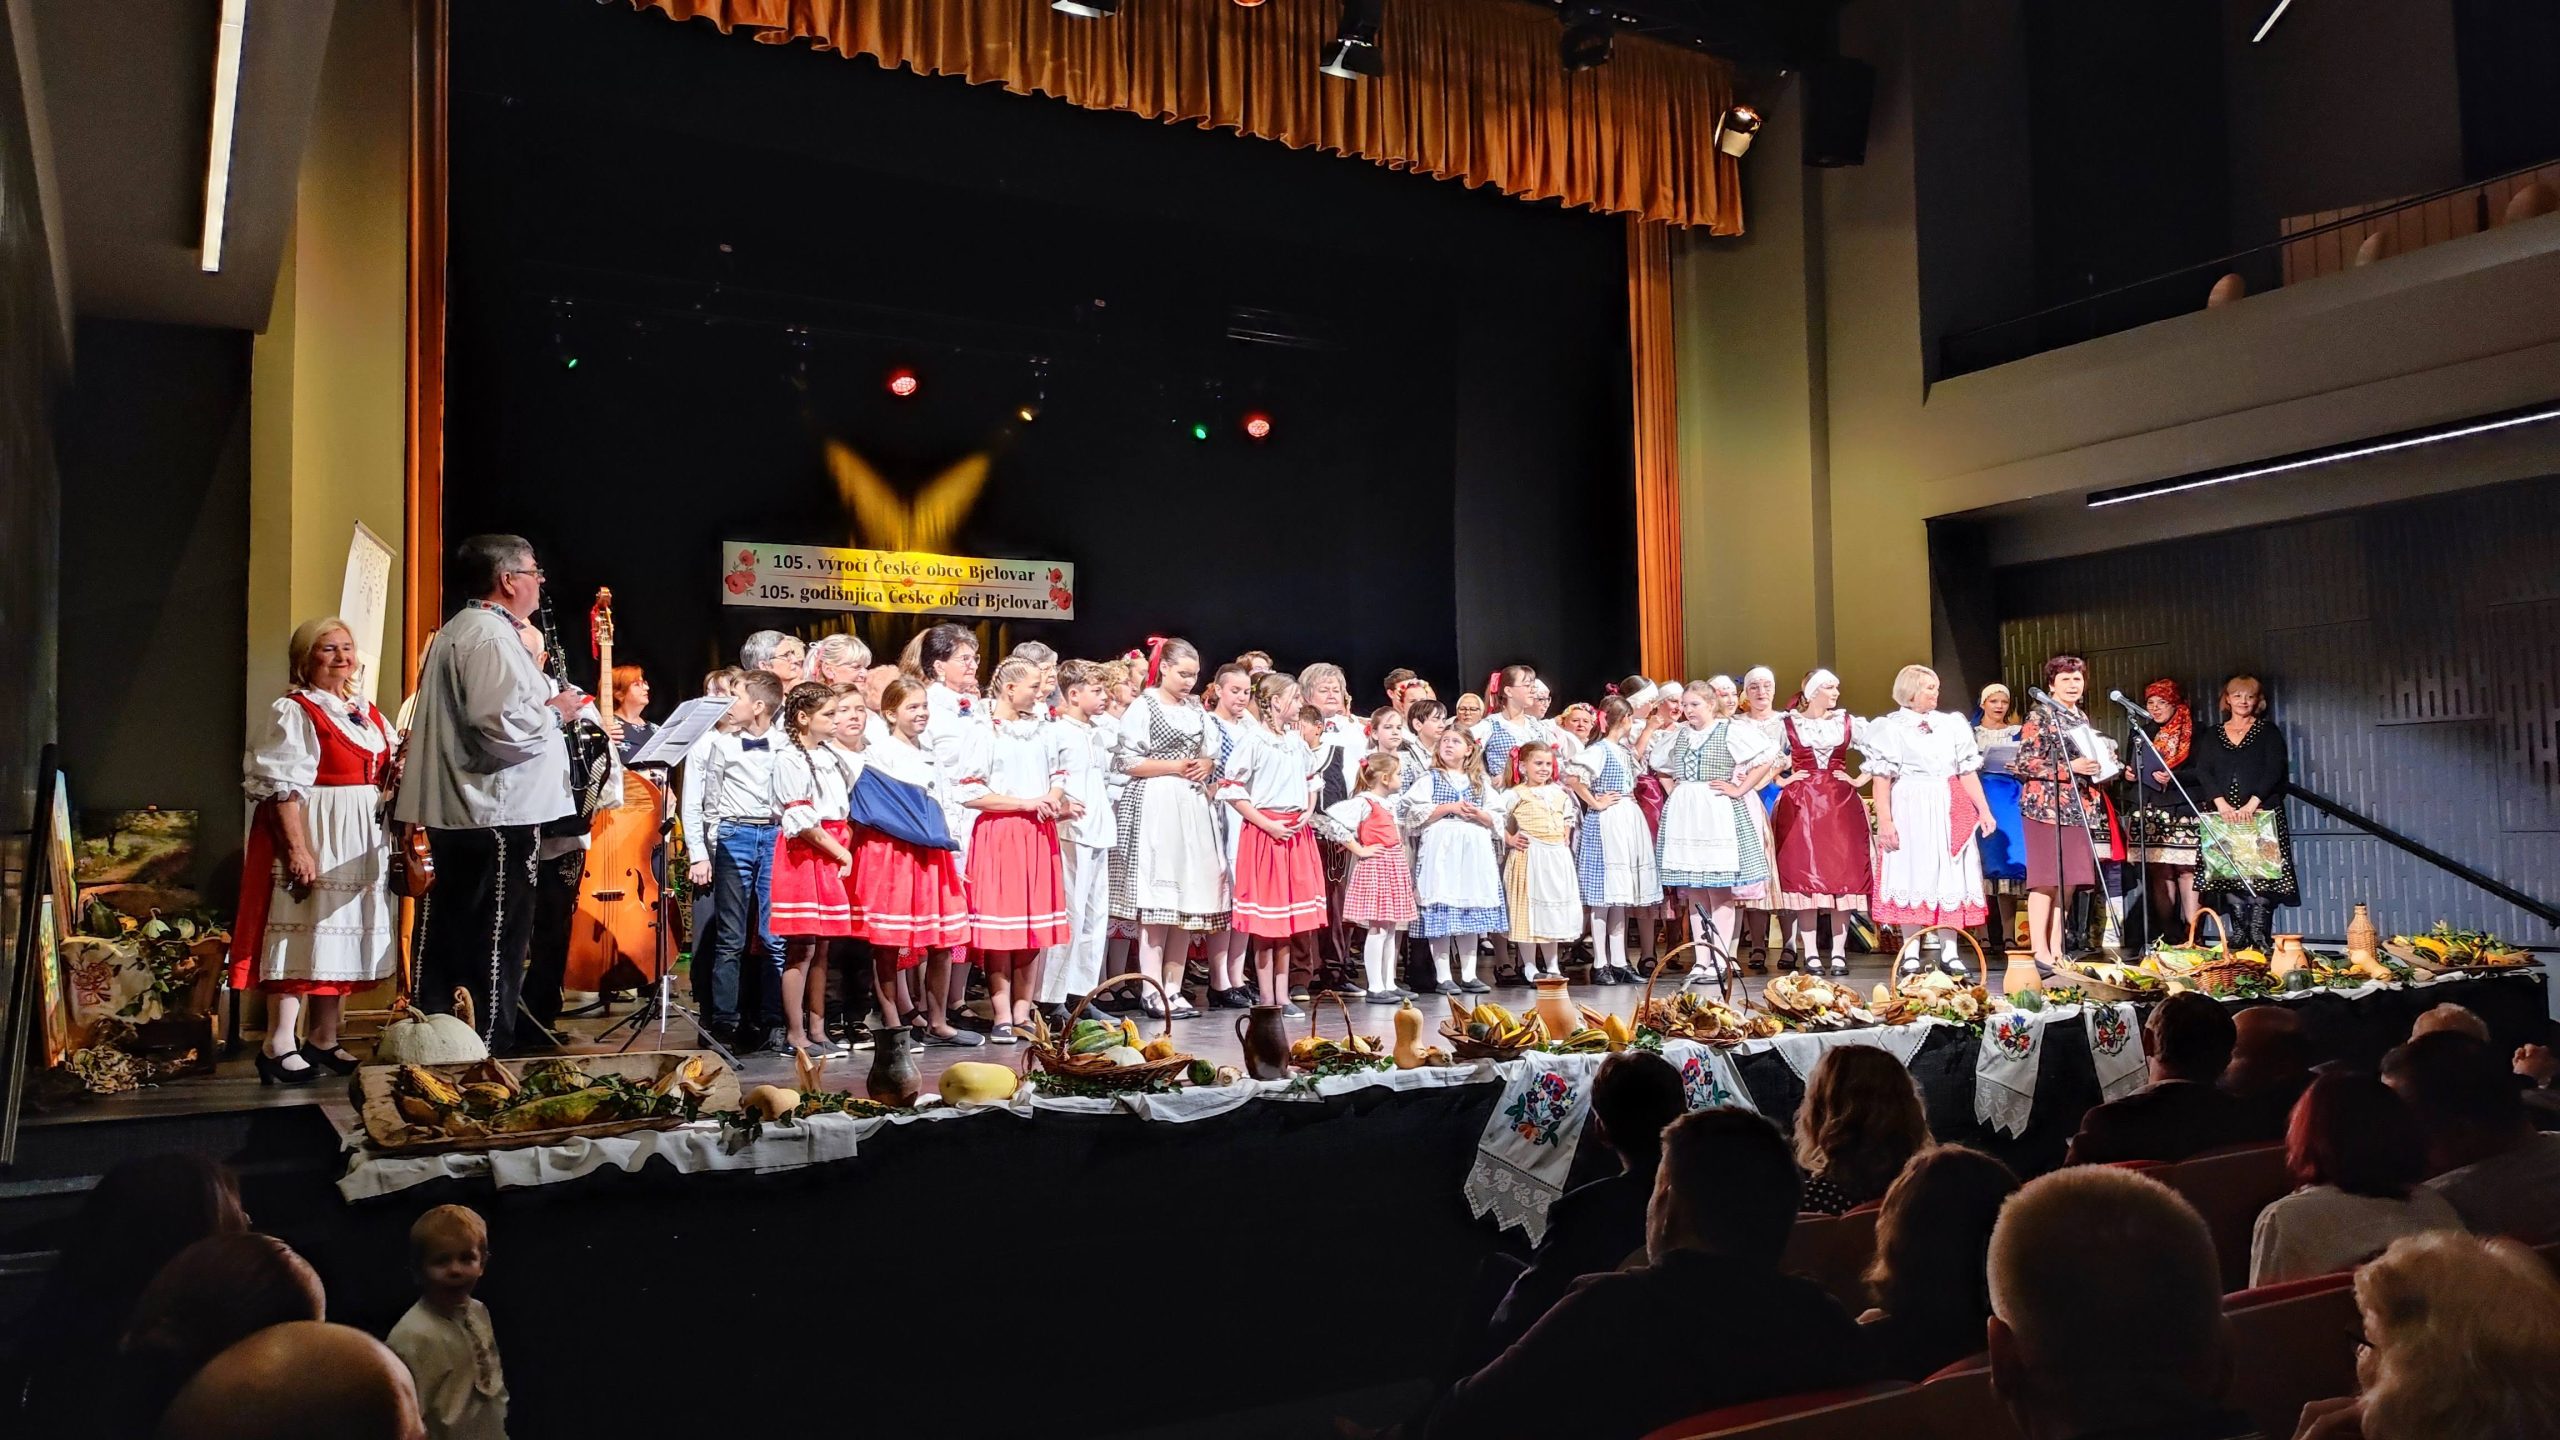 [FOTO] Uz puno pjesme i plesa Češka obec proslavila 105. rođendan